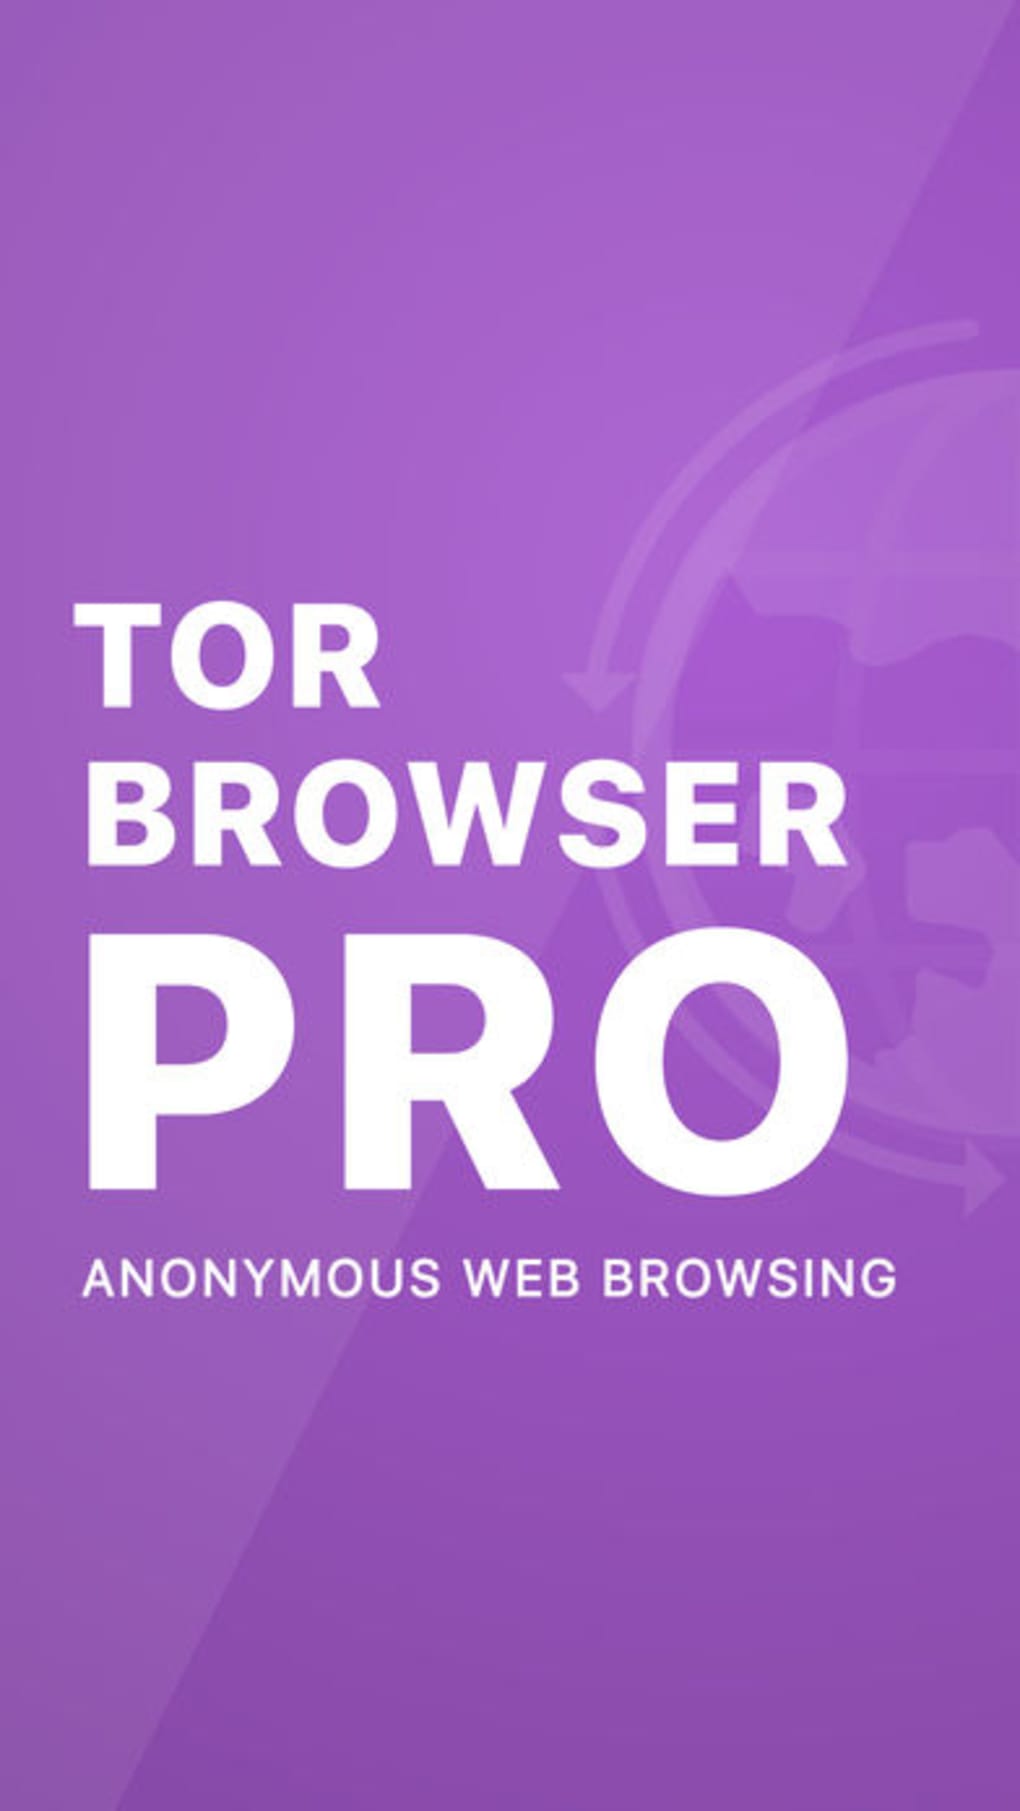 Tor browser iphone download mega вход скачать тор браузер windows 8 мега